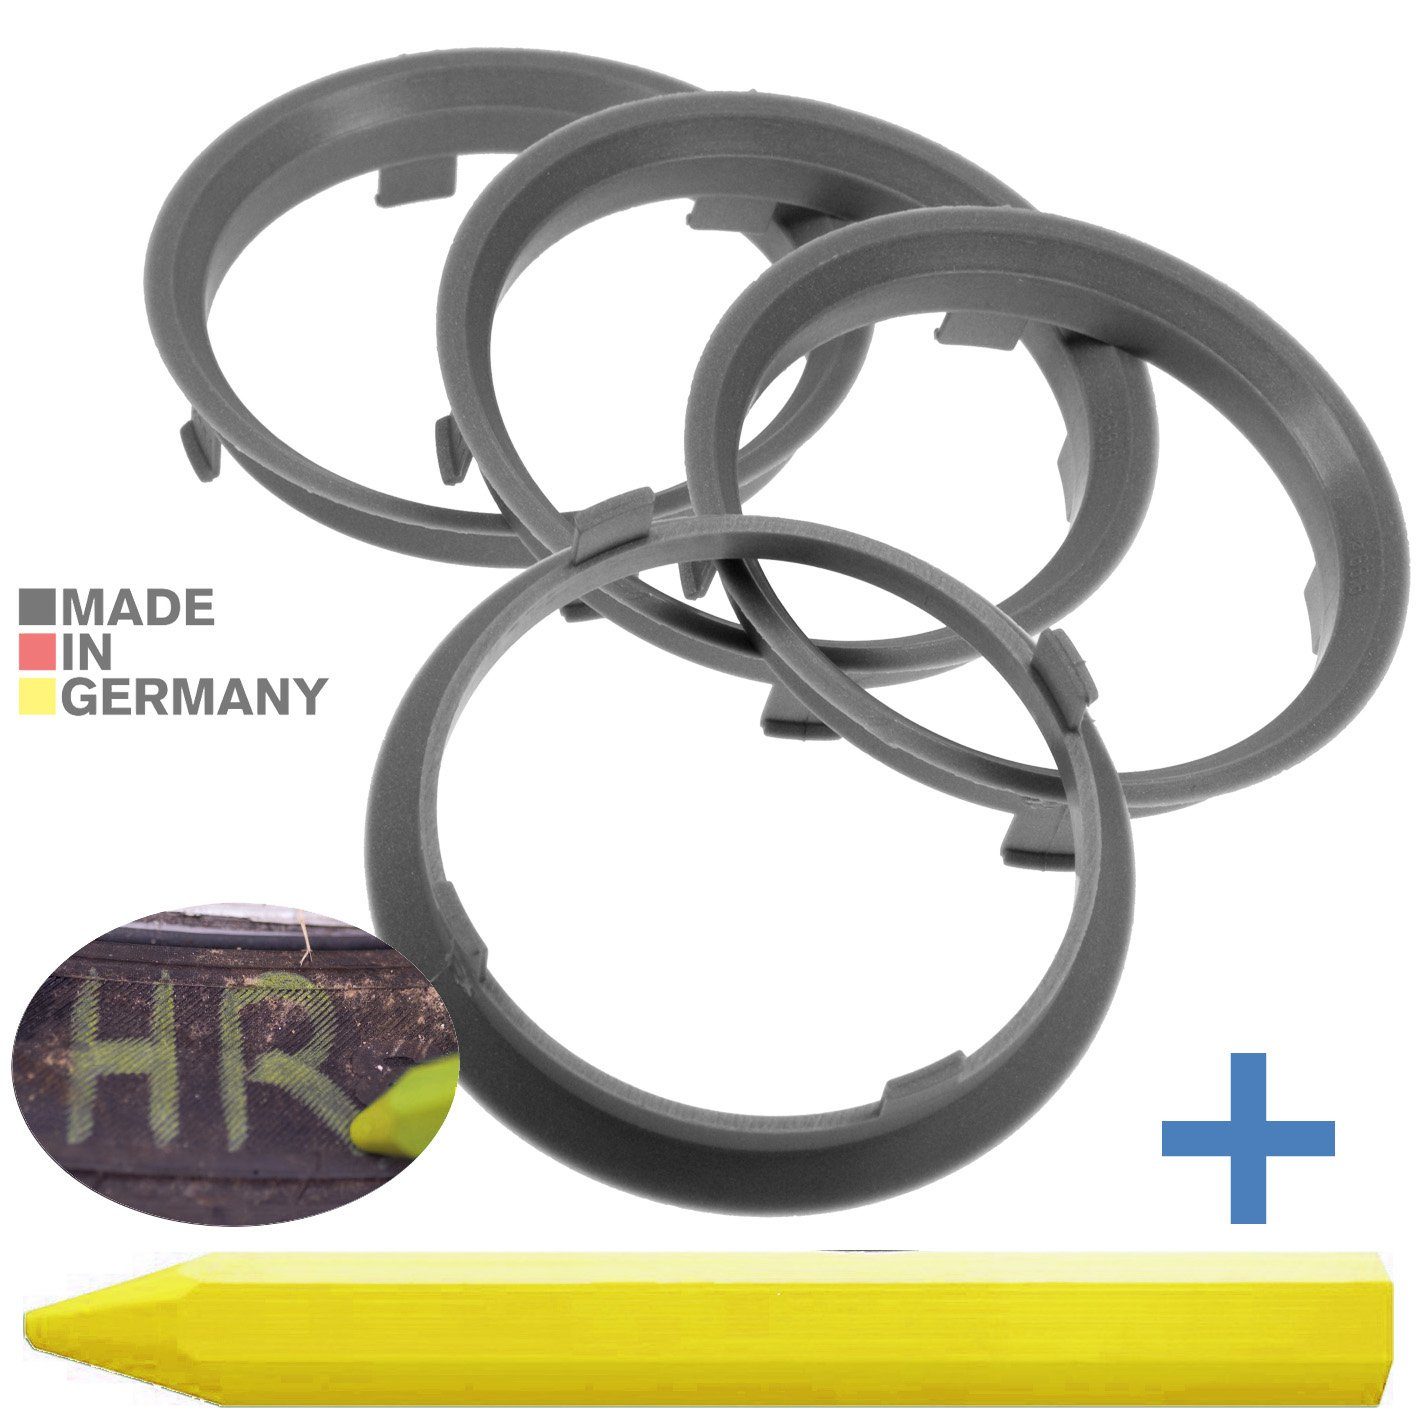 RKC Zentrierringe x Ringe Reifen 1x Stift, mm 66,6 Kreide 70,1 Reifenstift Silber Fett + Maße: 4X Felgen